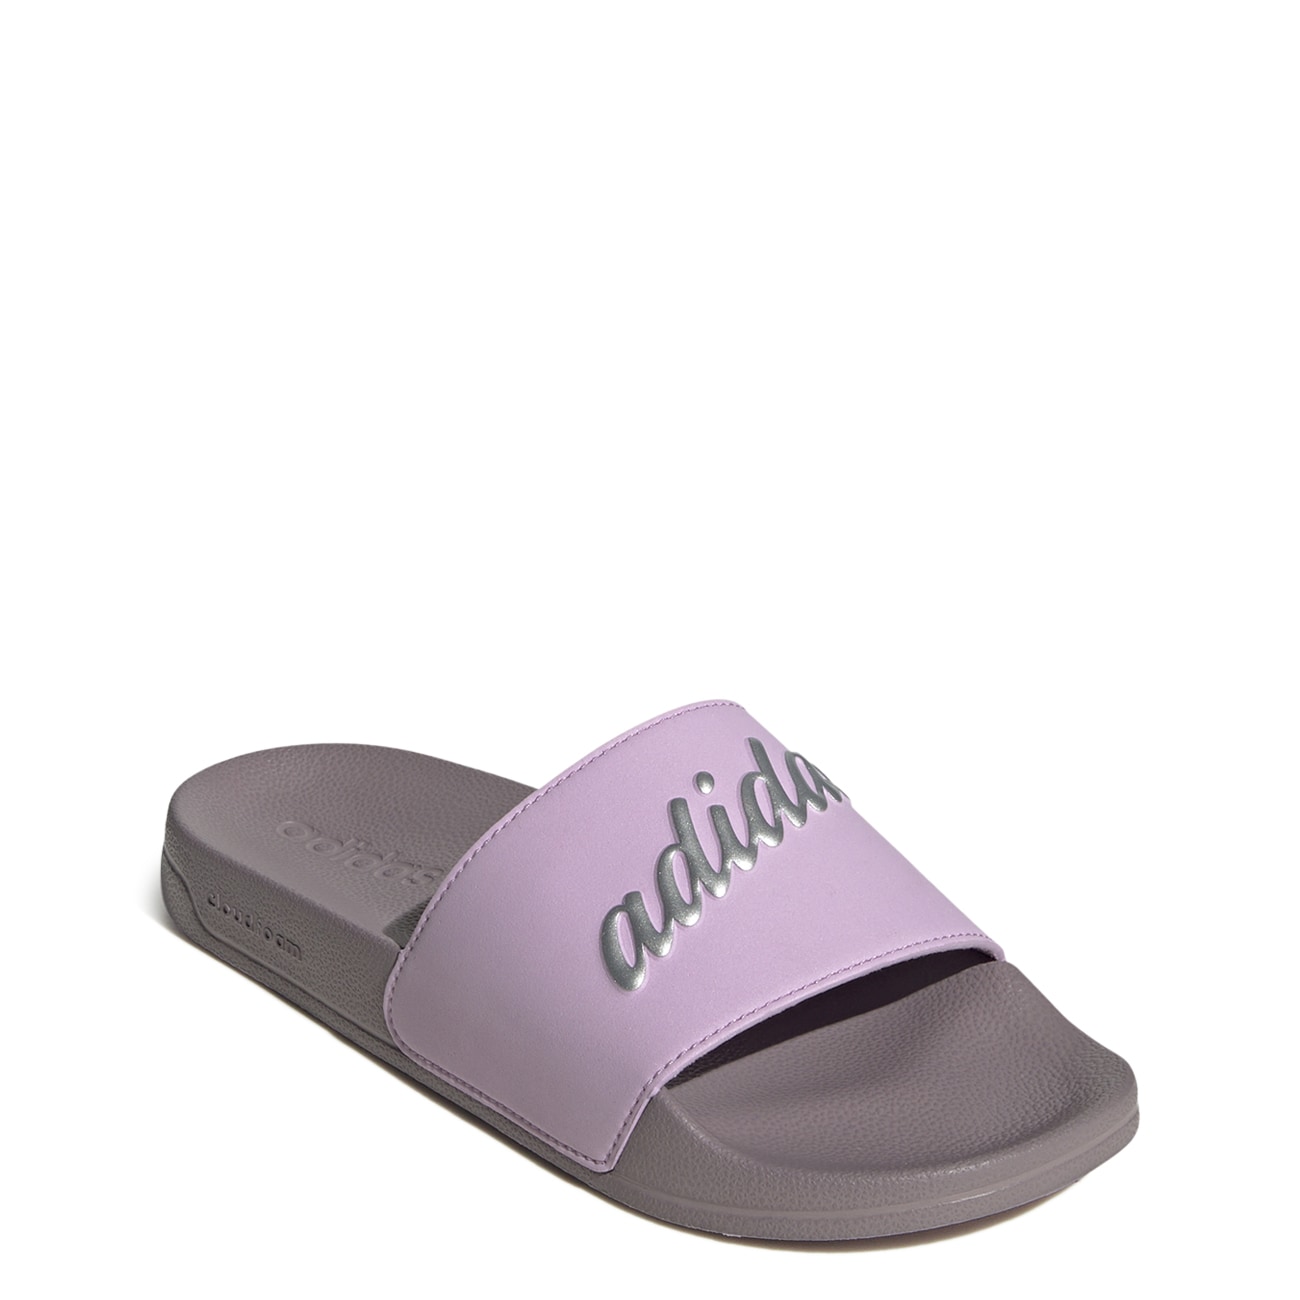 Women's Aditelle Shower Slide Sandal